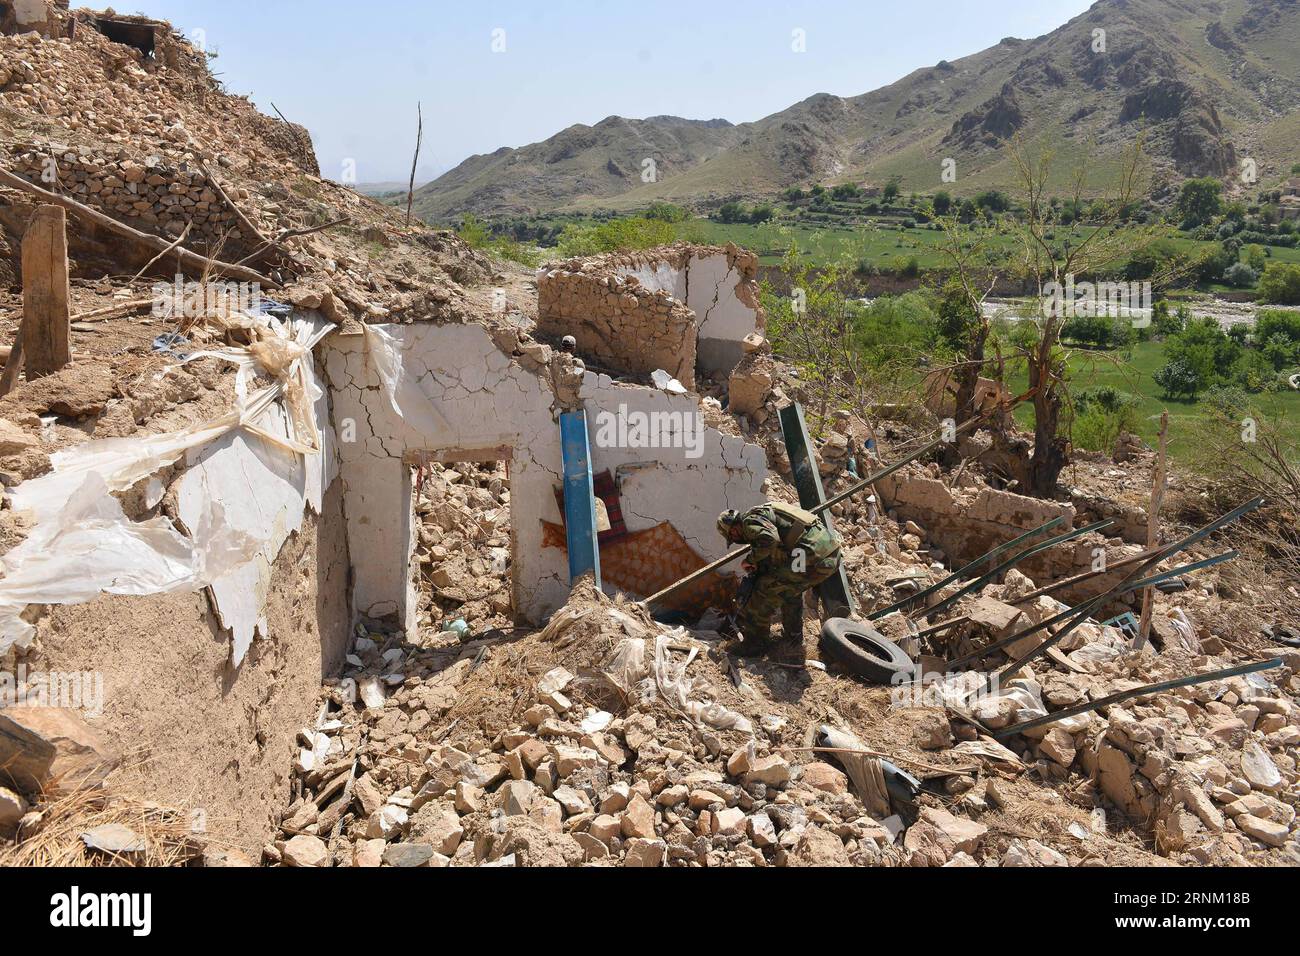 (170430) -- NANGARHAR, 30. April 2017 -- ein afghanischer Armeesoldat inspiziert am Ort eines US-Bombenanschlags im Bezirk Achin der Provinz Nangarhar, Afghanistan, 28. April 2017. Am 13. April schlugen die US-Streitkräfte in Afghanistan einen IS-Höhlenkomplex durch die größte nicht-nukleare Bombe im bergigen Achin-Bezirk der Provinz, 120 km östlich von Kabul, wobei fast 100 IS-Kämpfer getötet und ein Versteck der Militanten zusammen mit mehreren Bunkern und Tunneln zerstört wurden. )(RH) AFGHANISTAN-NANGARHAR-USA BOMBENANGRIFFE NACH RahmanxSafi PUBLICATIONxNOTxINxCHN Nangarhar April 30 2017 auf afghanische Armee Soldat Inspektion Stockfoto